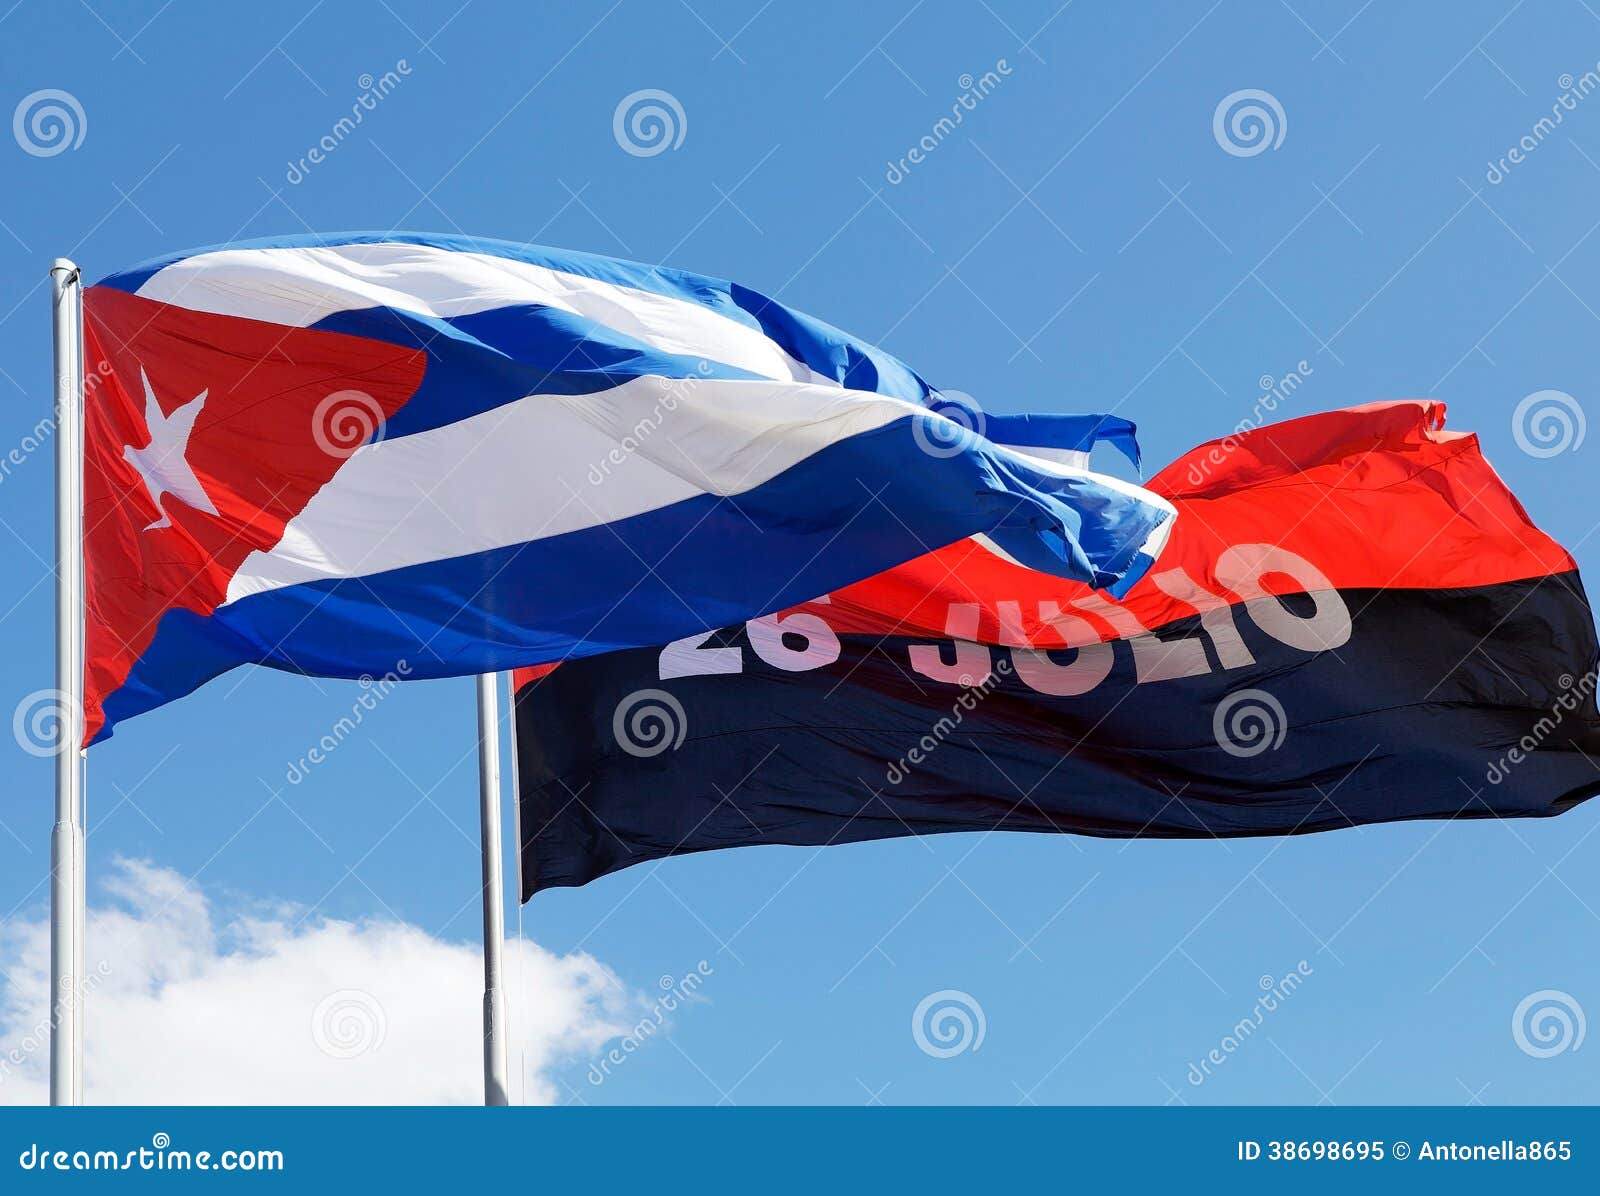 Движение 26 июля. Флаг 26 июля. Движение 26 июля Куба флаг. Знамя движения 26 июля. Национальные движения флаги.